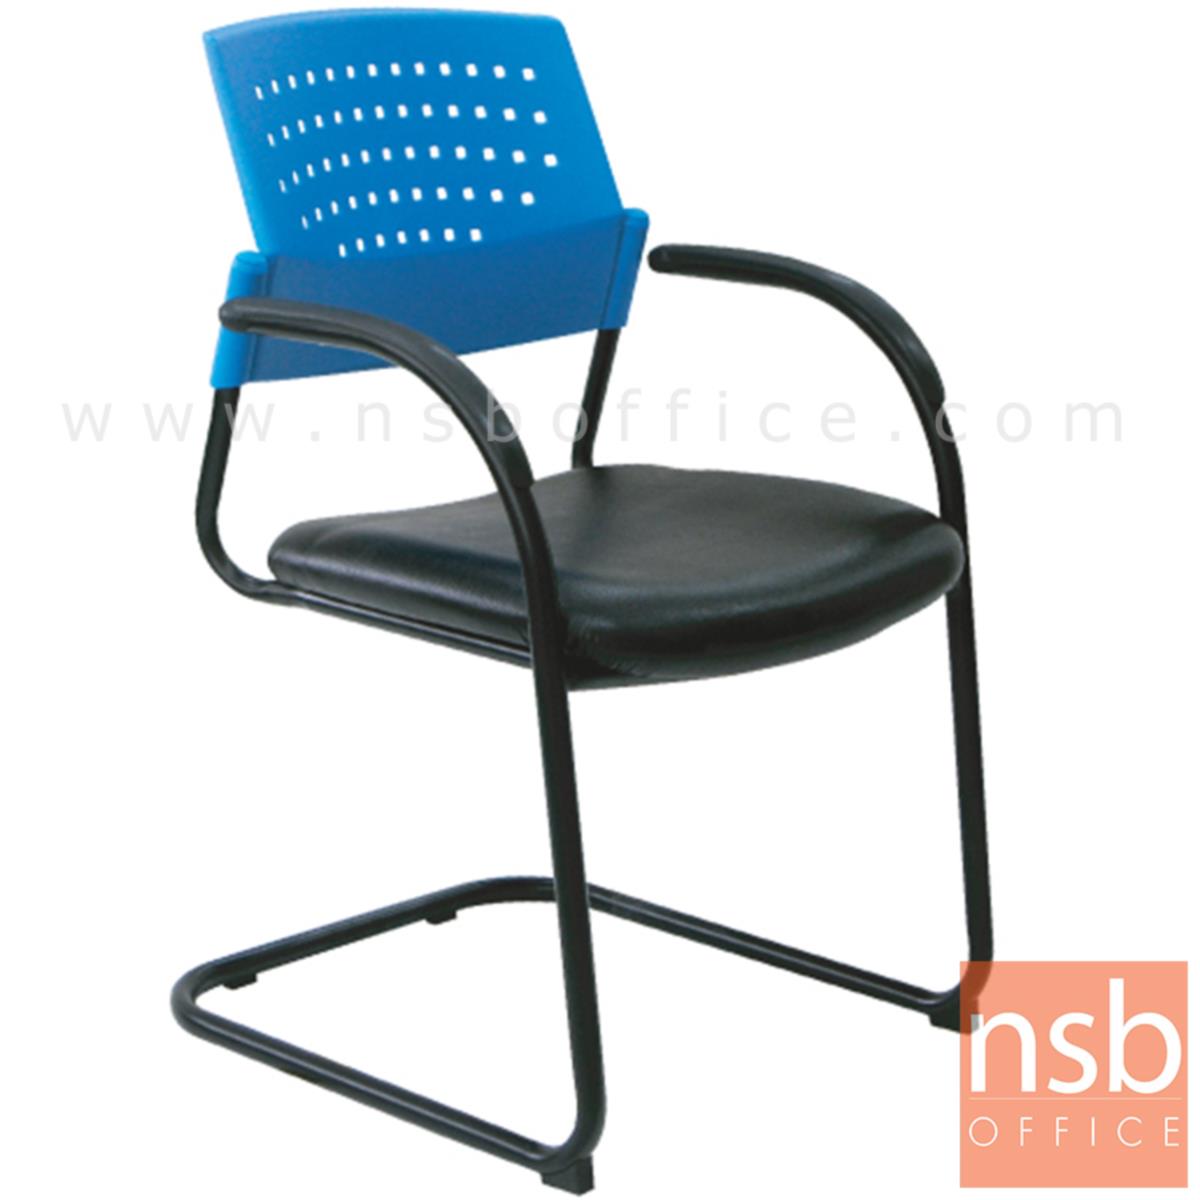 B05A061:เก้าอี้รับแขกขาตัวซีหลังเปลือกโพลี่ รุ่น Howlett (ฮาวเล็ต)  ขาเหล็กพ่นดำ